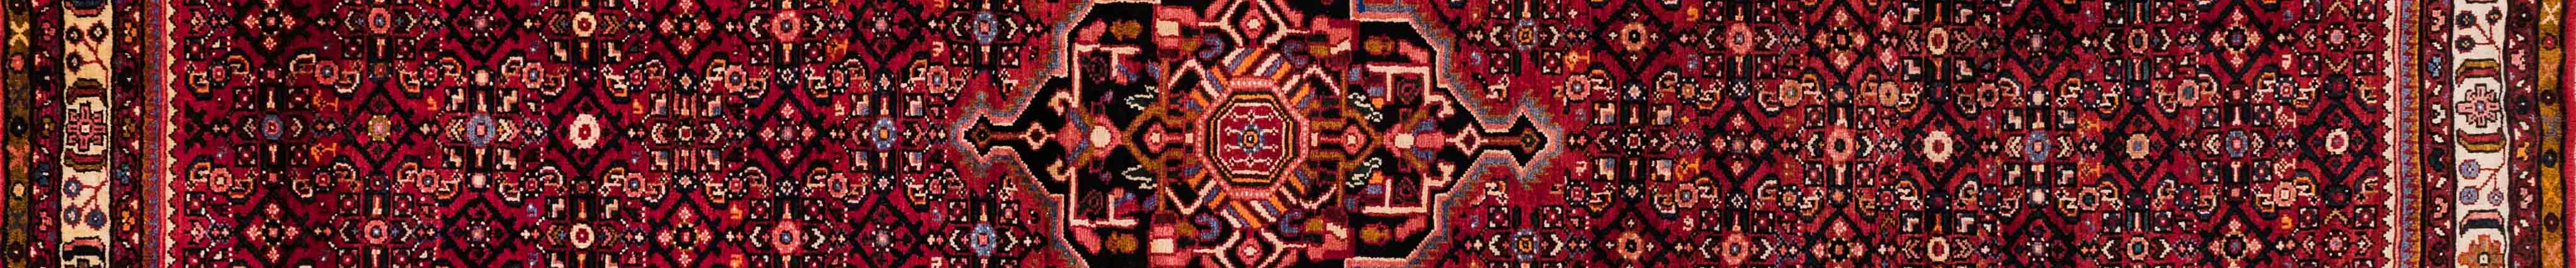 Hamadan Persian Carpet Rug N1Carpet Canada Montreal Tapis Persan 1850